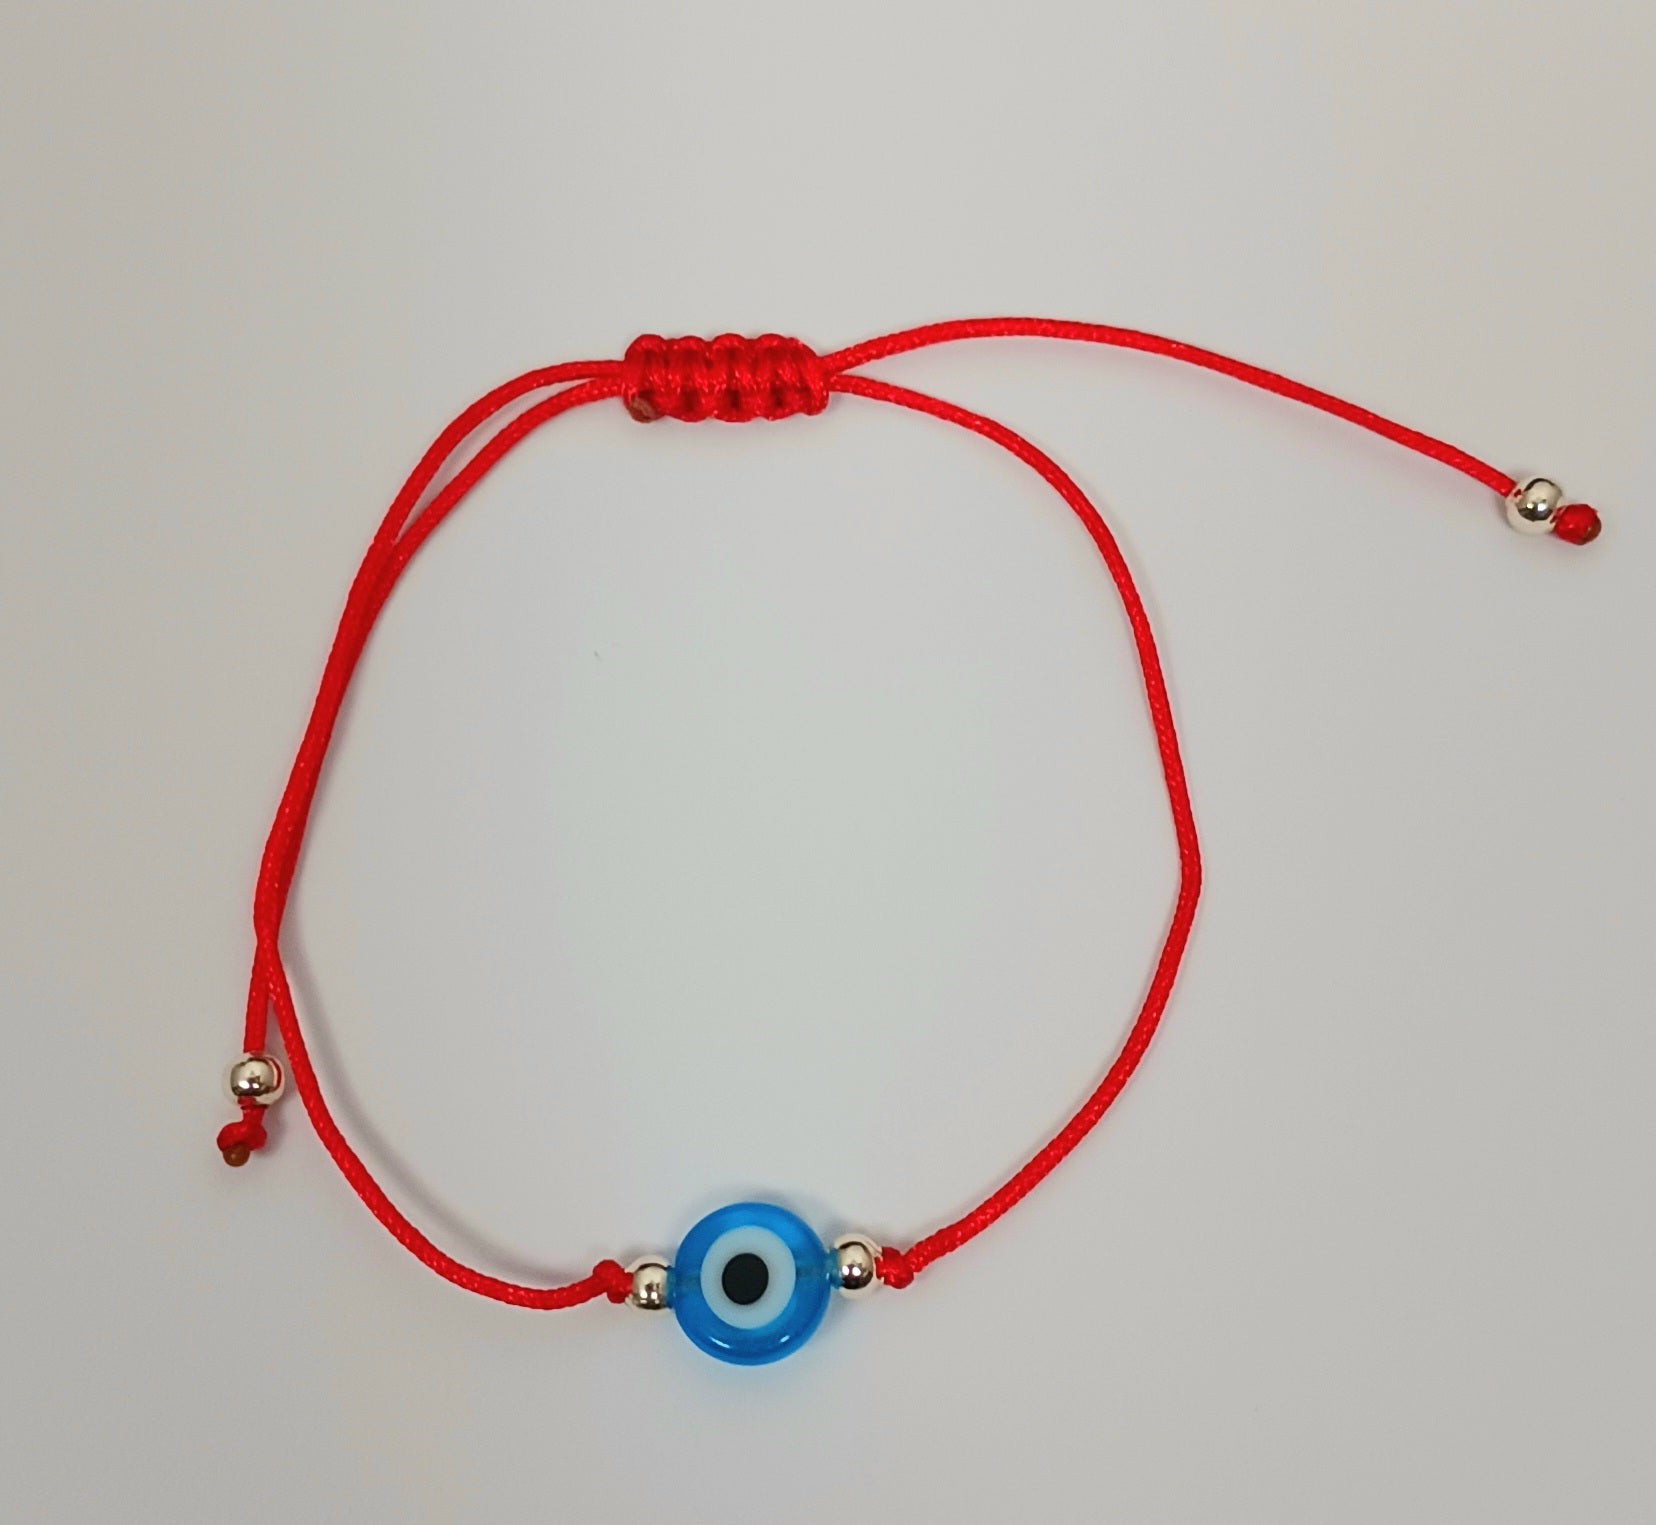 Evil Eye Protection Bracelet Red String Light Blue